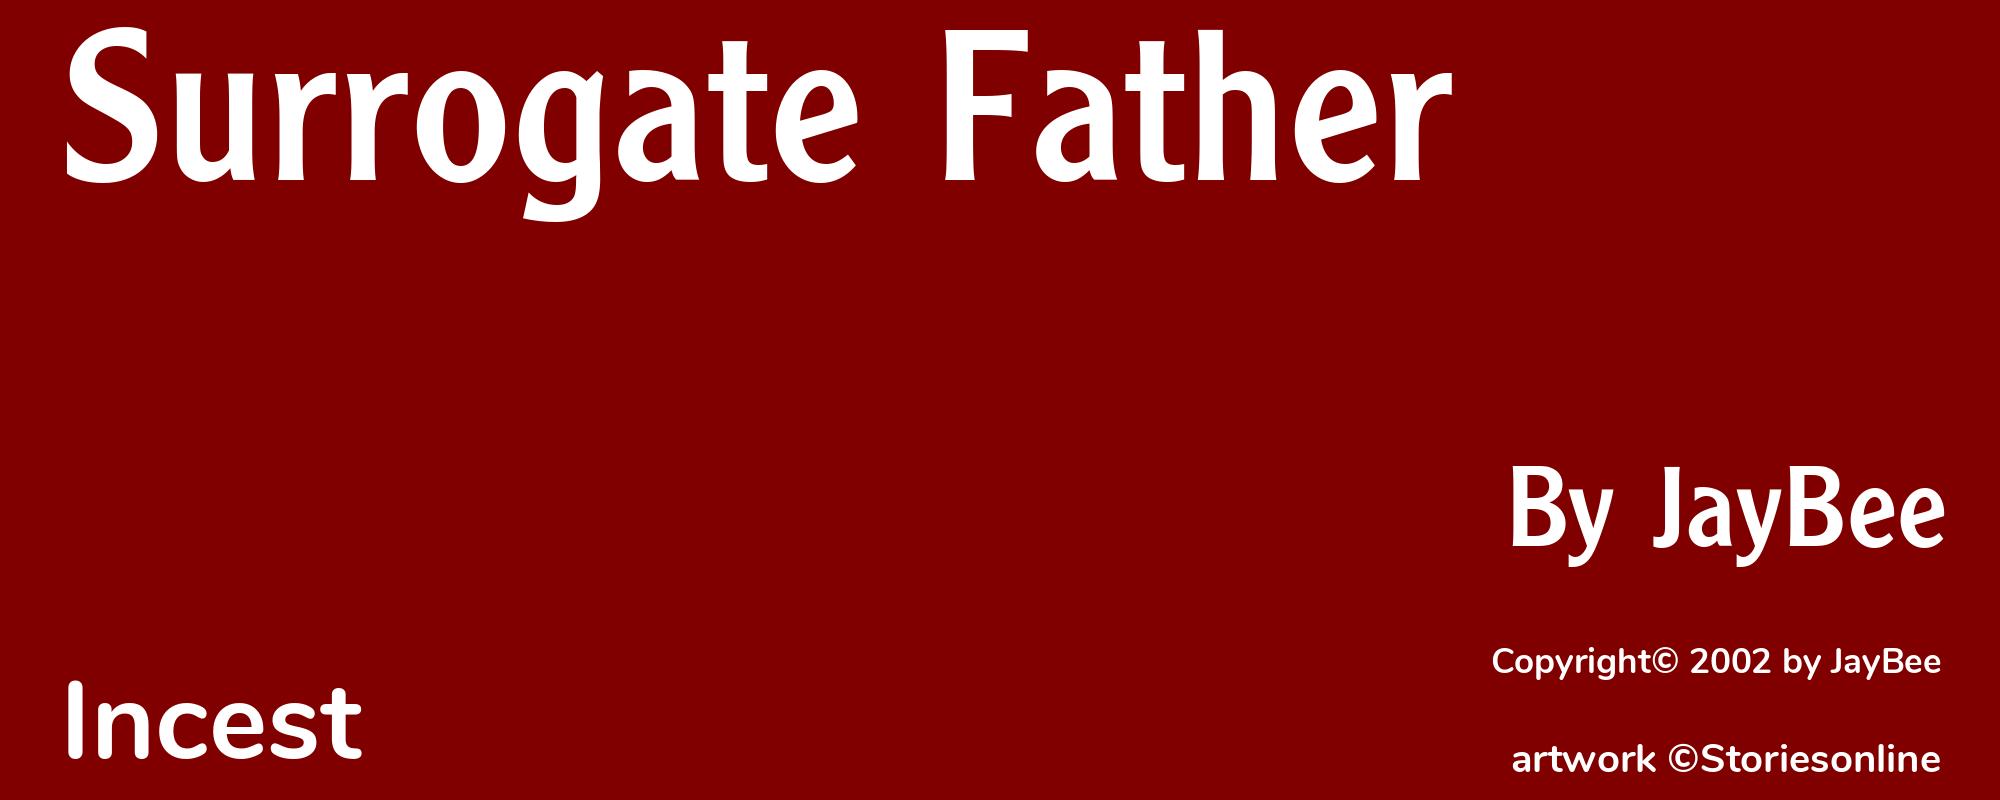 Surrogate Father - Cover